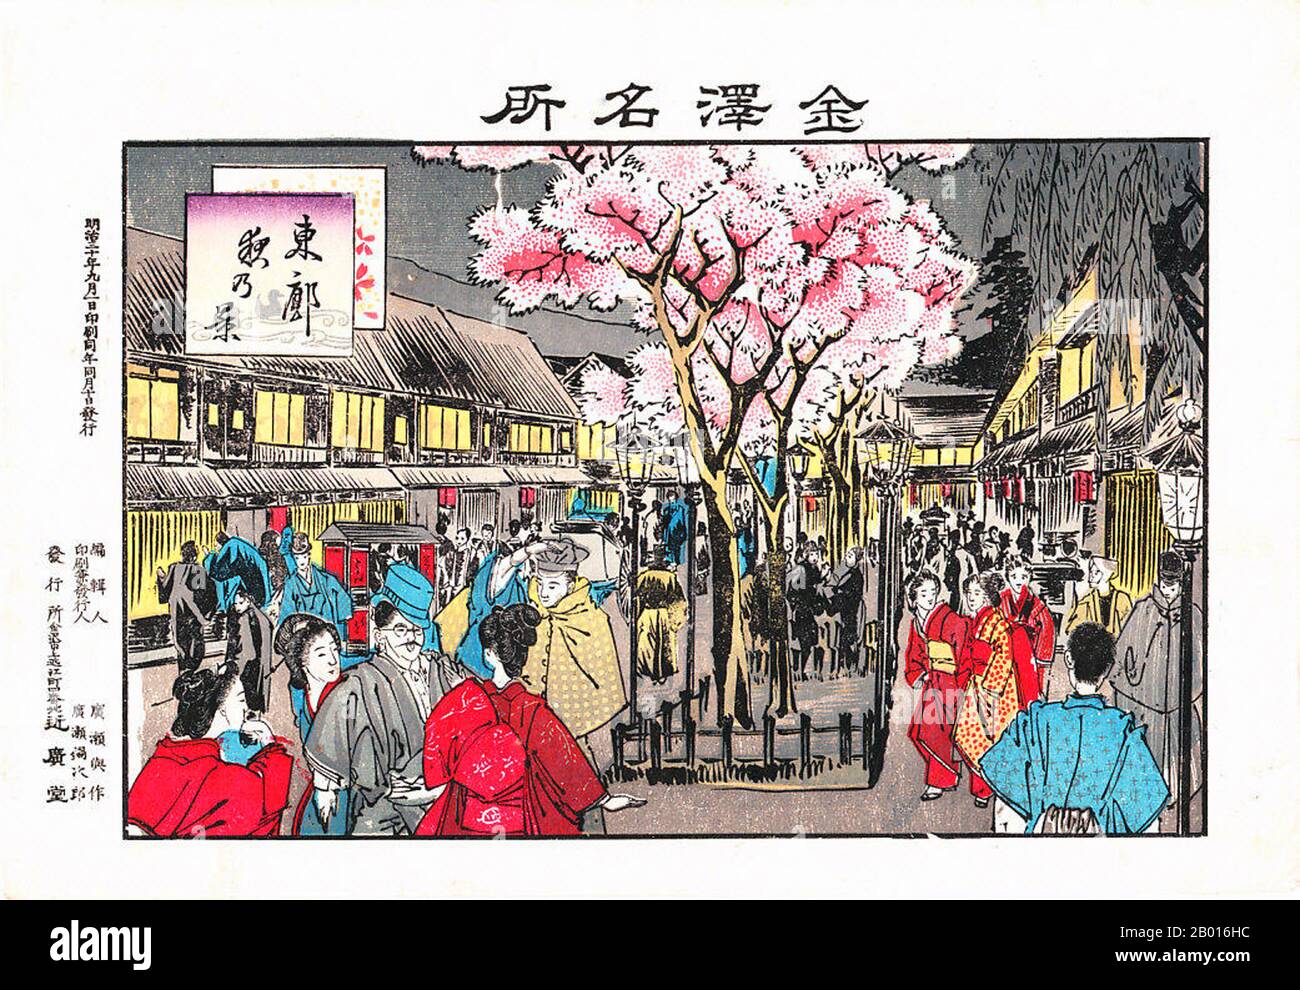 Japón: 'Disfrutando de la temporada de flores de cereza por la noche'.  Bloque de madera ukiyo-e, 1897. 'Hanami' es la práctica japonesa centenaria  de hacer picnics bajo un floreciente sakura o un